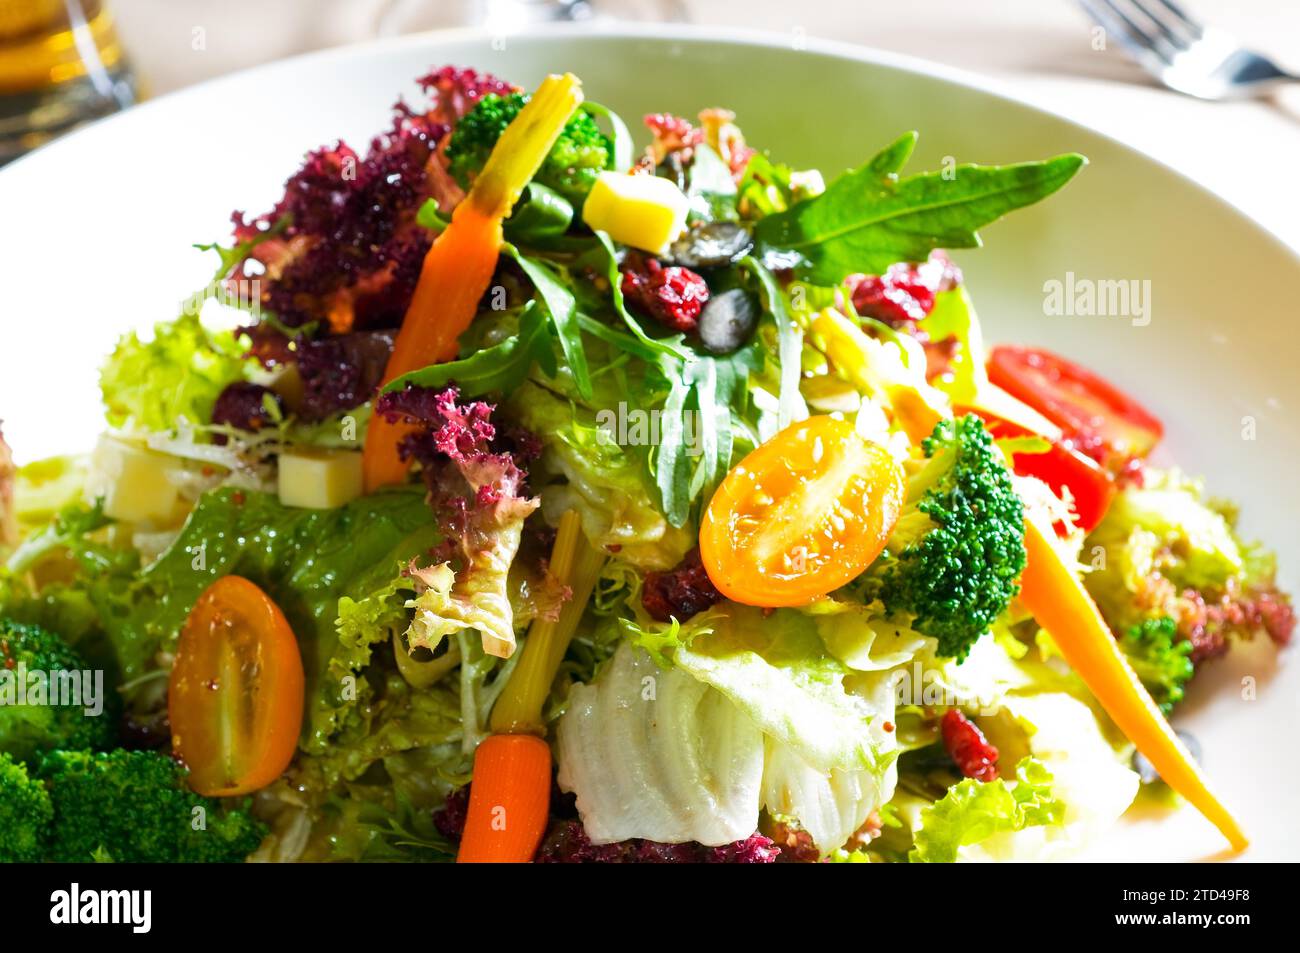 Ensalada de verduras frescas mezcladas de cerca extremo, comida muy saludable, fotografía de alimentos Foto de stock